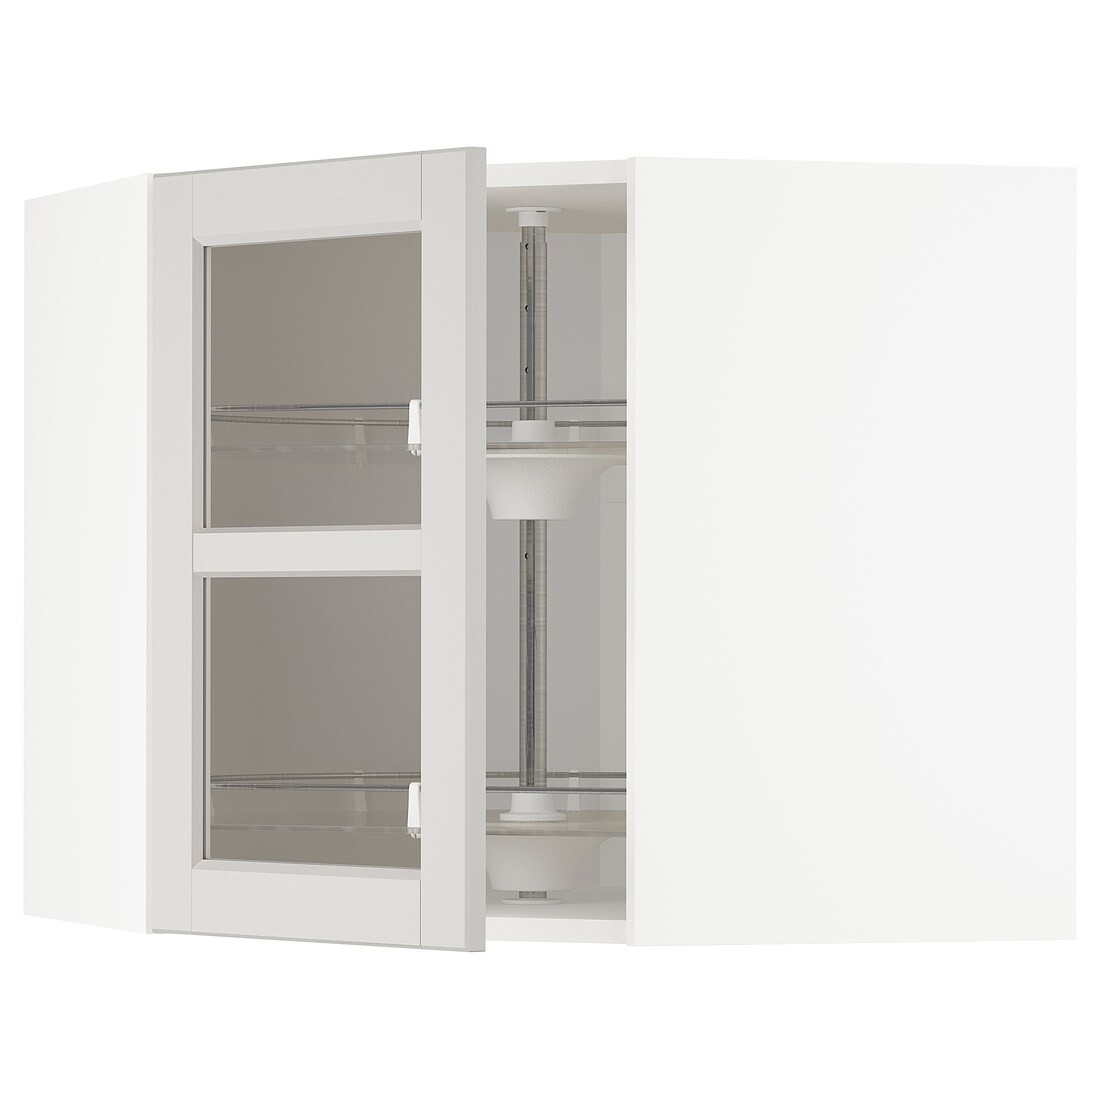 METOD МЕТОД Угловой настенный шкаф с каруселью / стеклянная дверь, белый / Lerhyttan светло-серый, 68x60 см